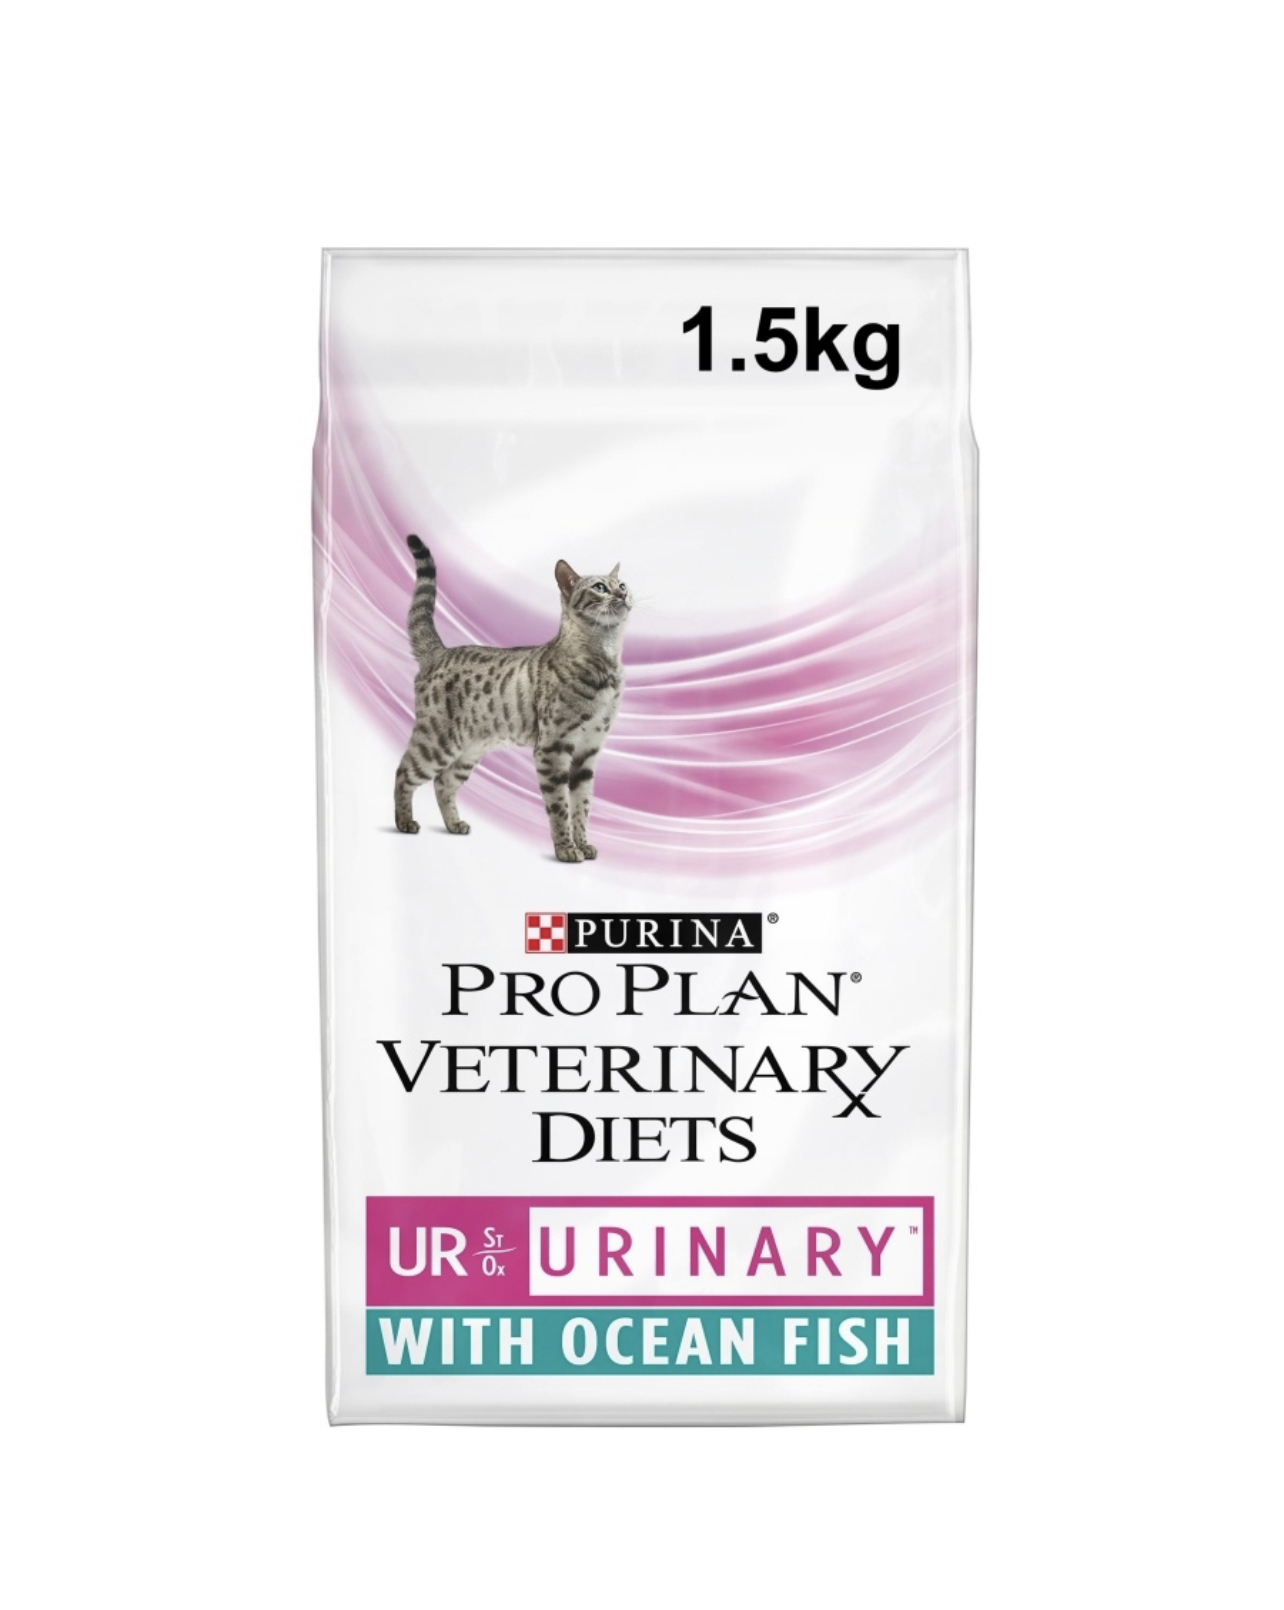 Pro plan urinary сухой. Pro Plan Veterinary Diets корм сухой Urinary для кошек 1.5 кг. Purina renal для кошек. Уринари Пурина Проплан 1.5 кг. Pro Plan renal function для кошек 1.5 кг.